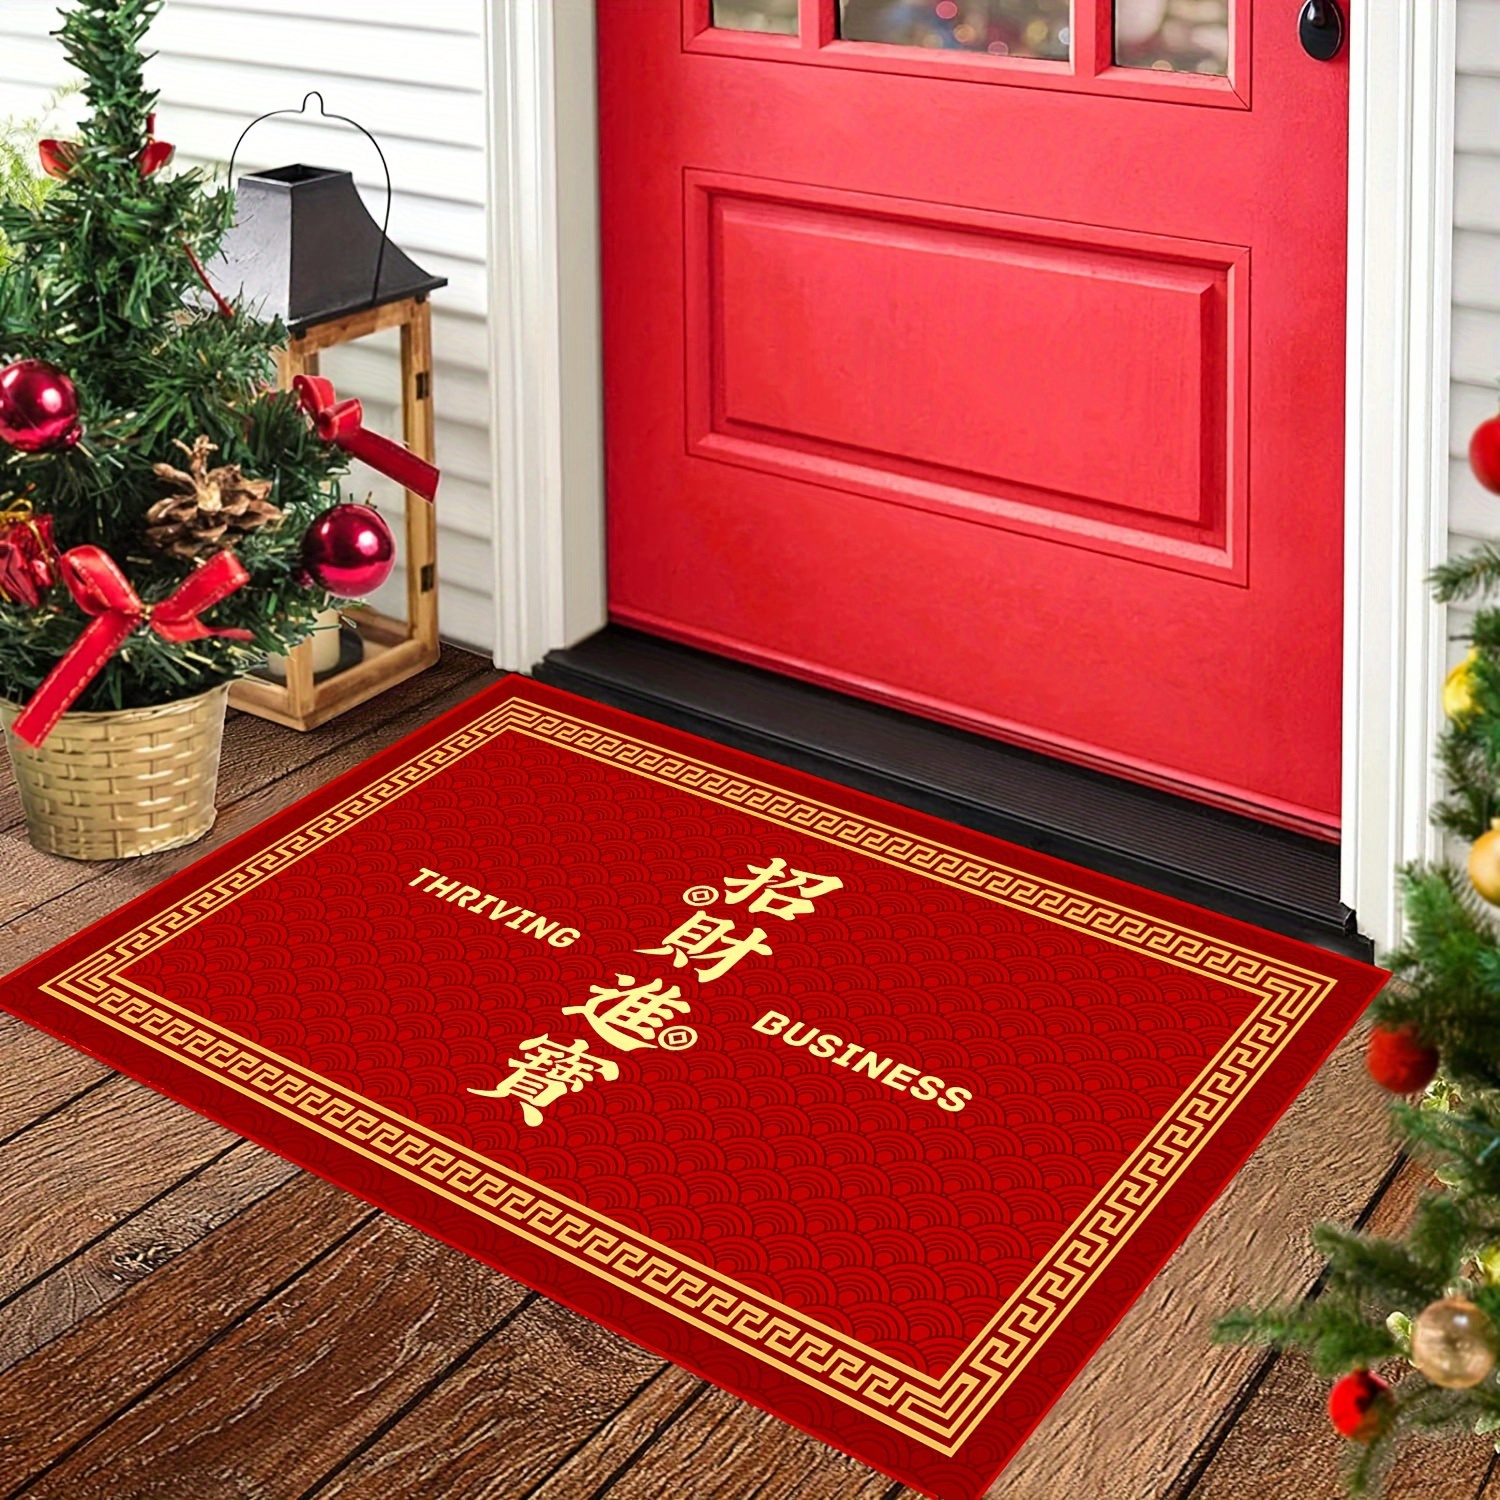 Christmas Tree Mat Xmas Welcome Decorative Doormat Non Slip Winter Floor  Mats New year Frontdoor Accessories Home Supplies - AliExpress